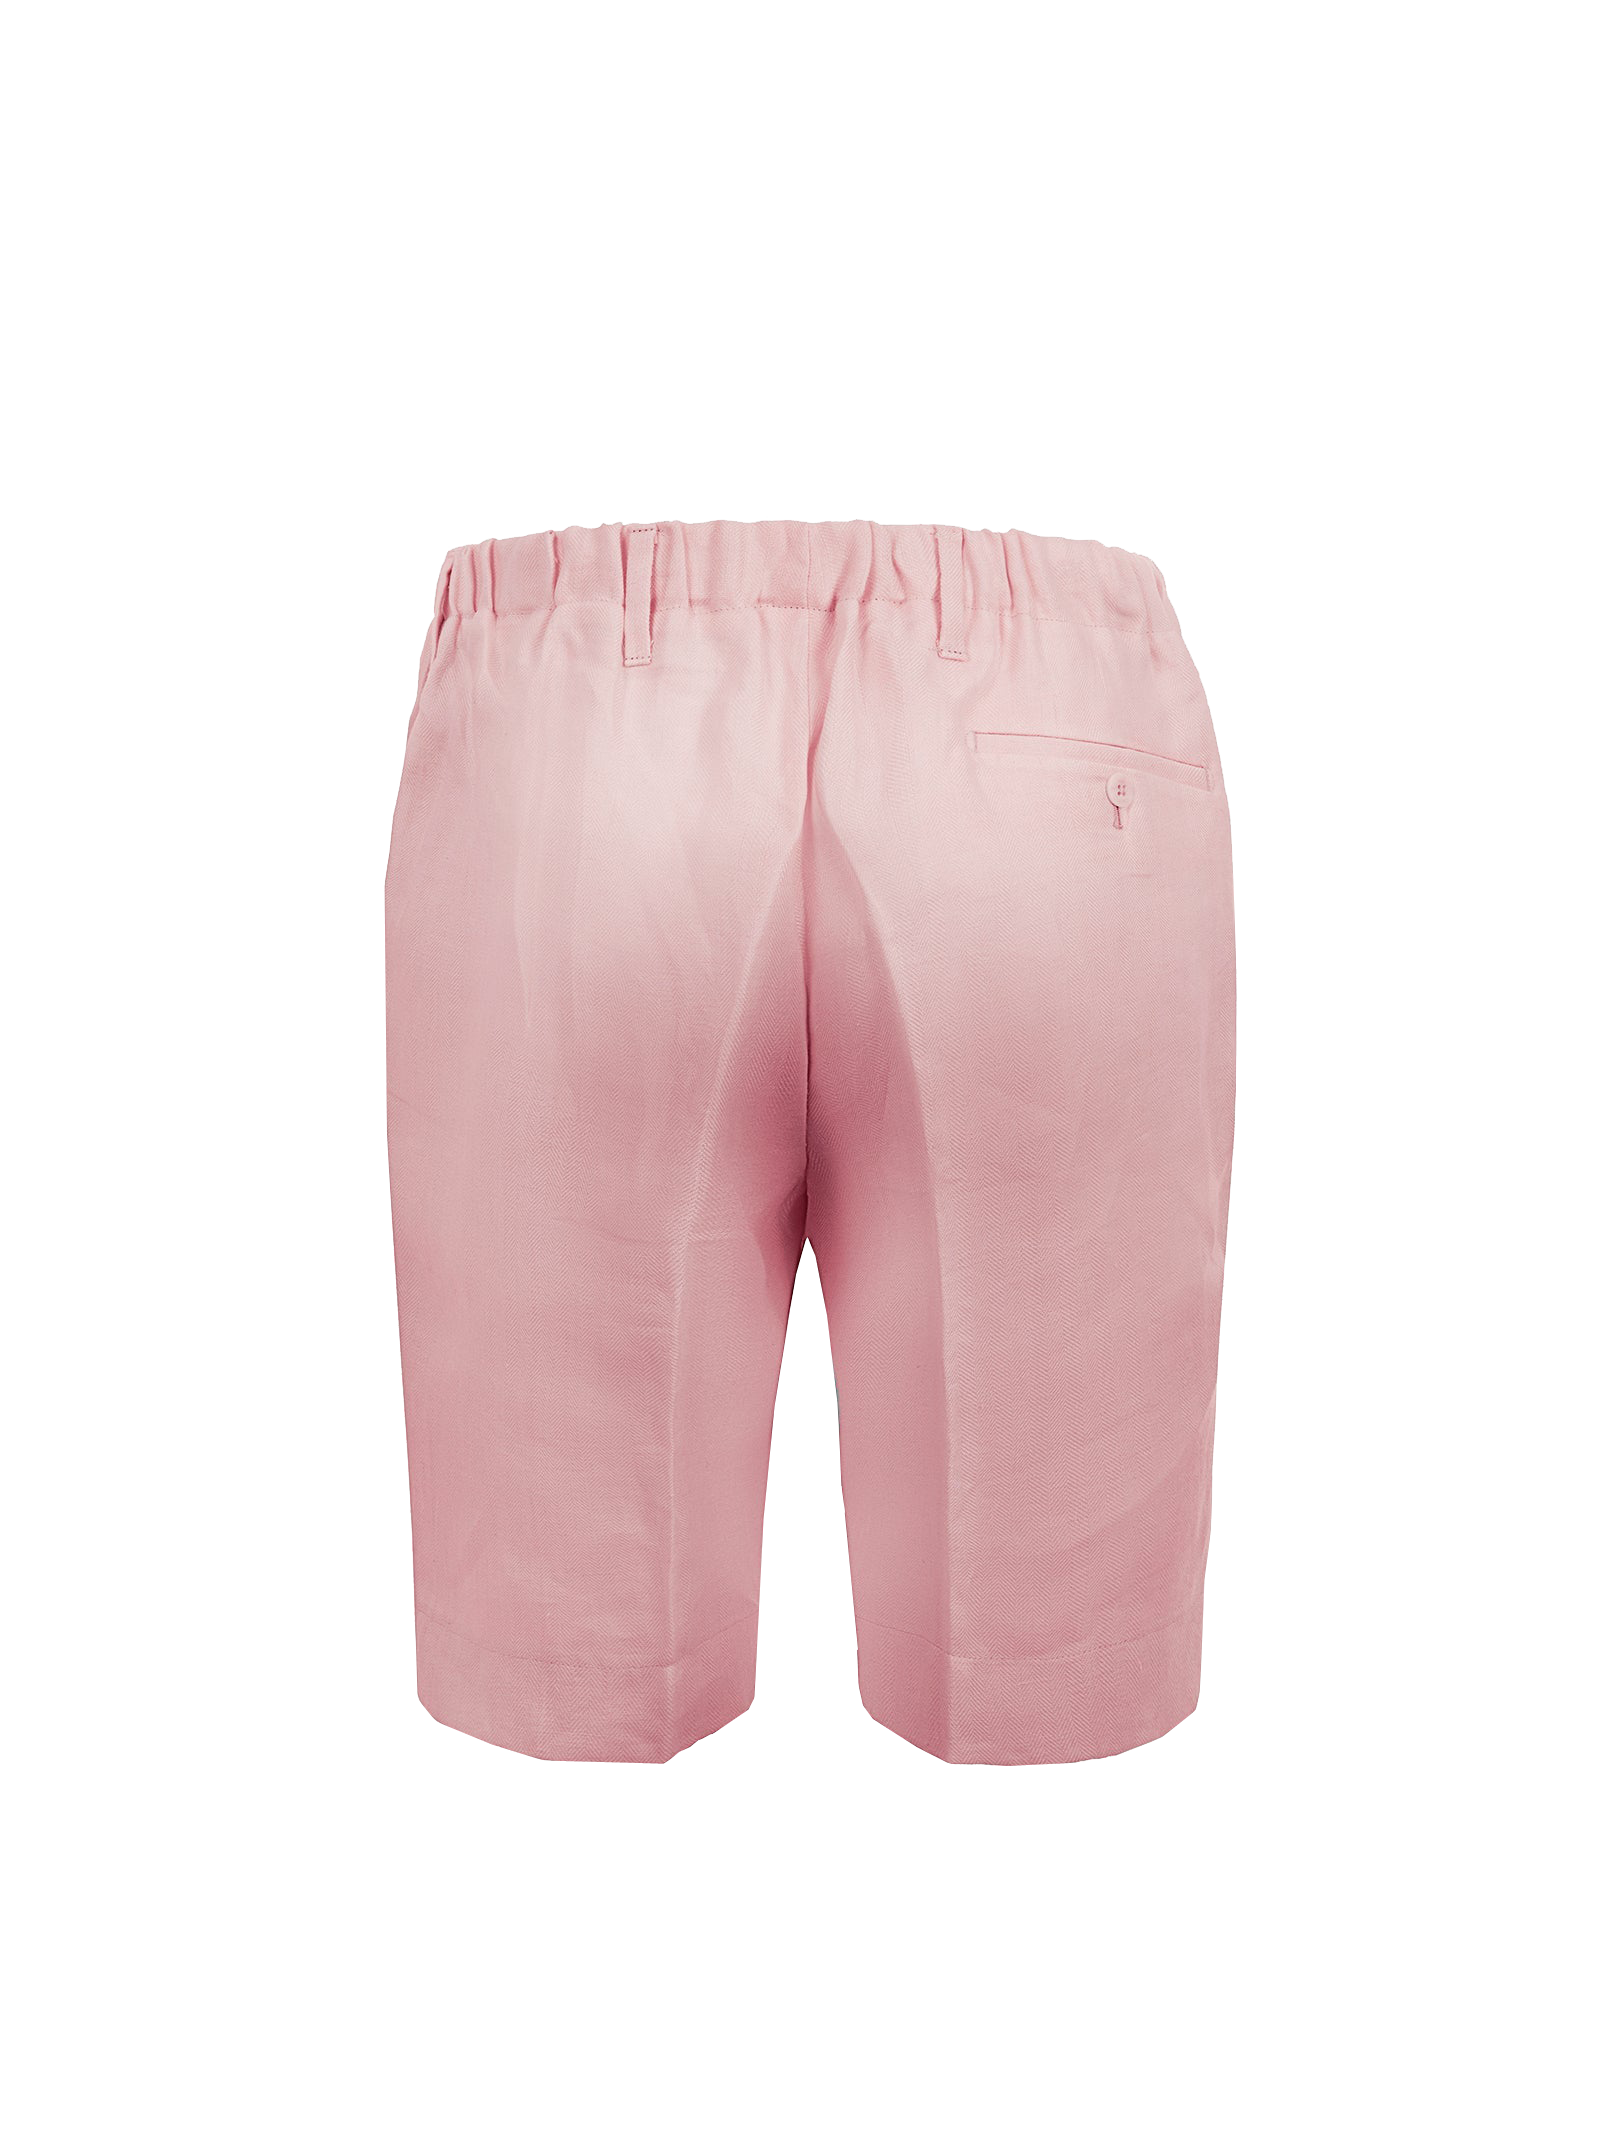 Bermuda Capri for men 100% Capri pink linen pant  back